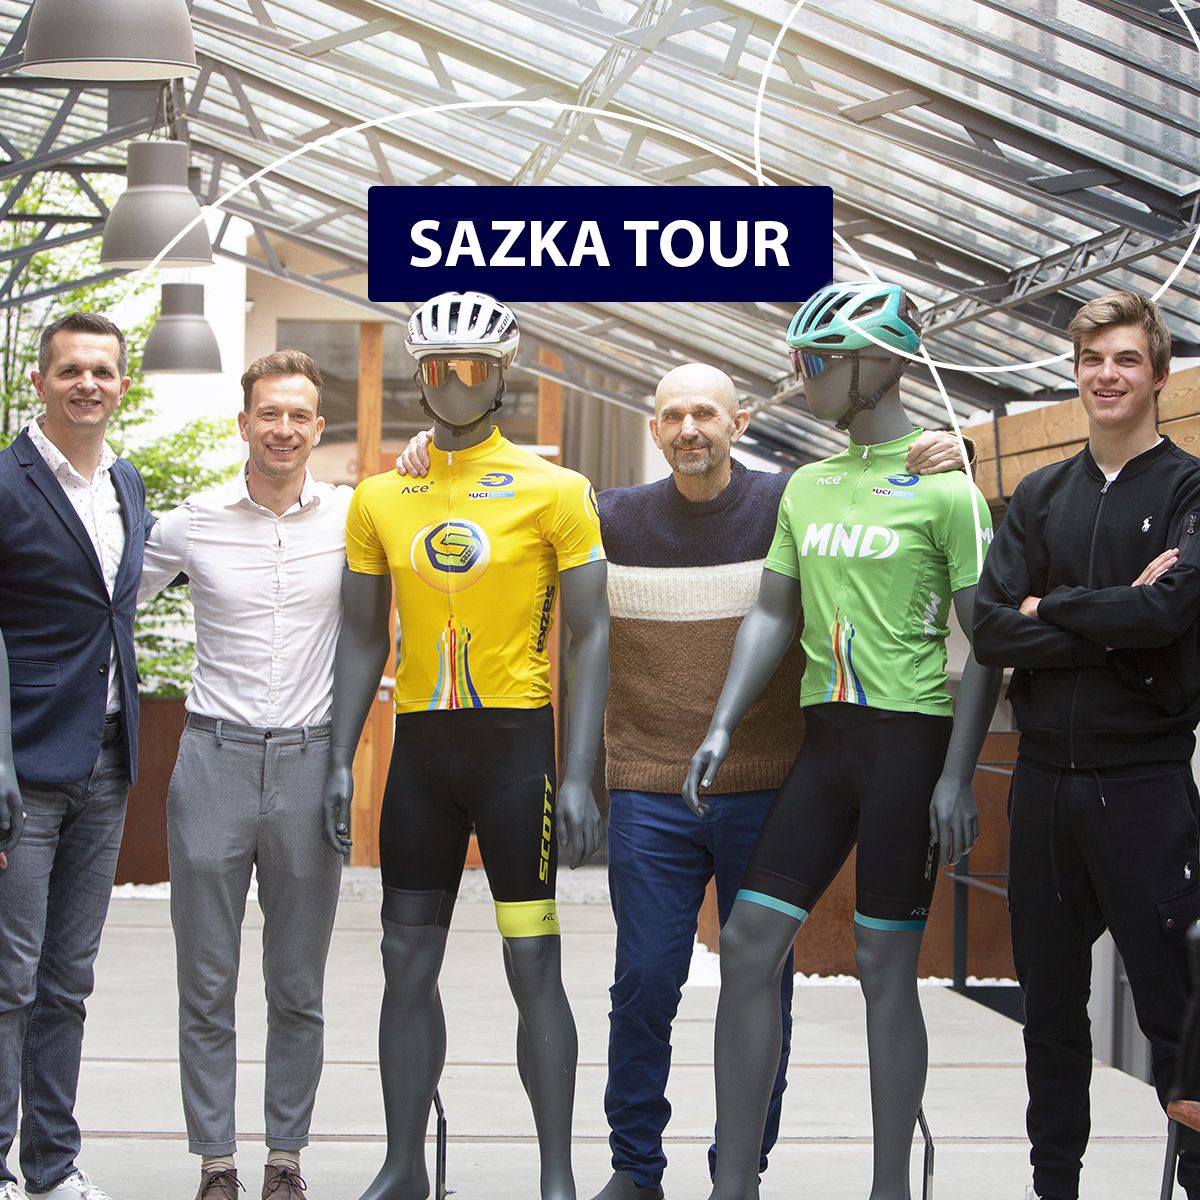 Sazka Tour